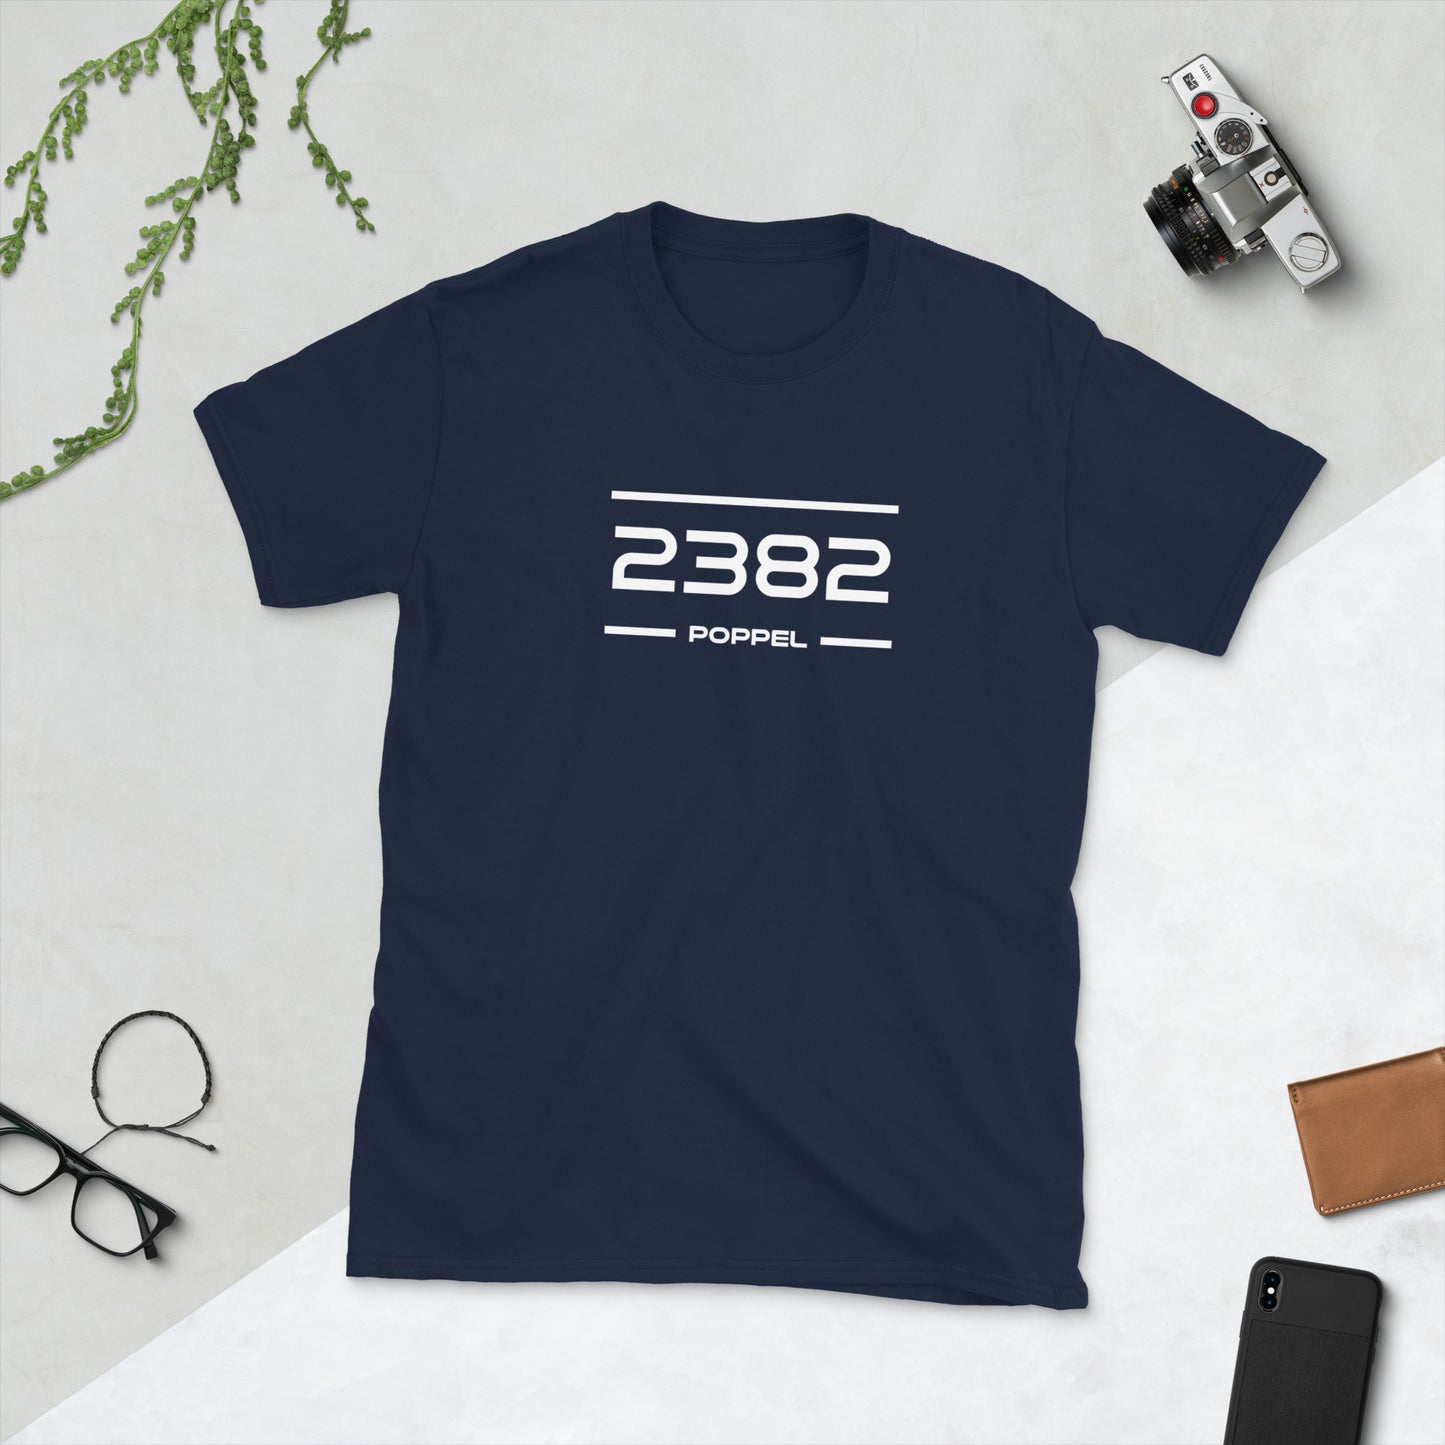 Tshirt - 2382 - Poppel